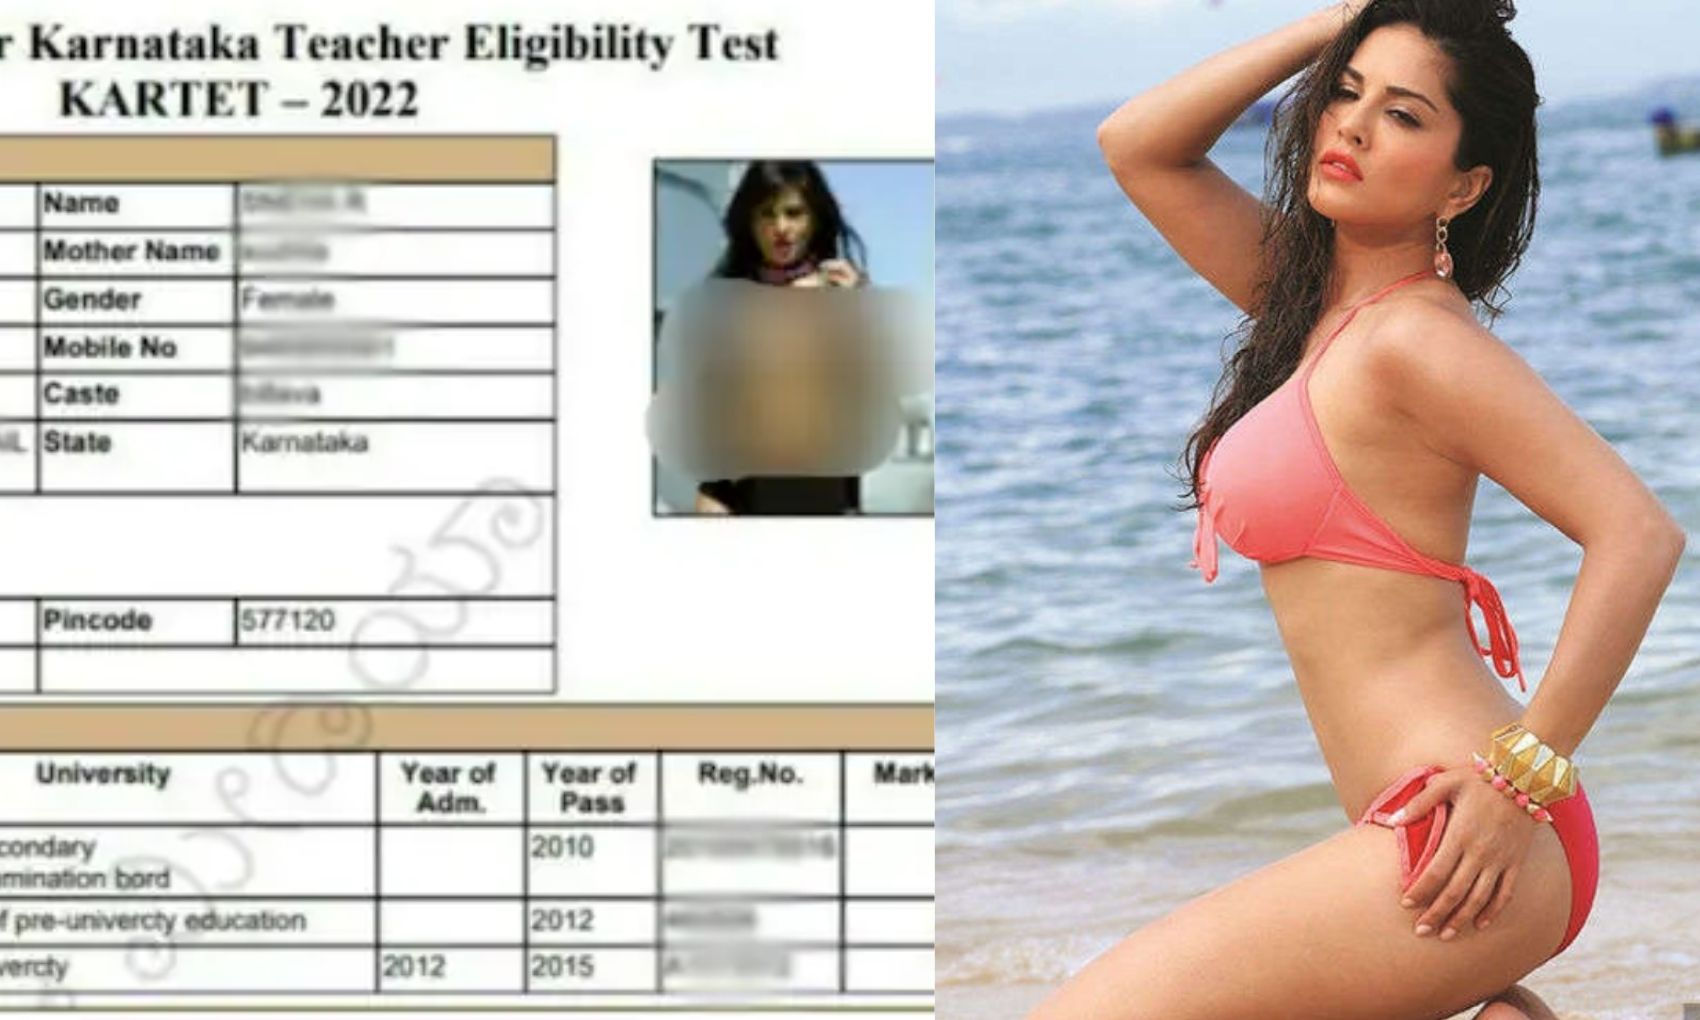 Sunny Leone: छात्रा के एडमिट कार्ड पर लगी सनी लियोन की अश्लील फोटो देखकर उड़ गए स्टूडेंट के होश, मच गया हंगामा